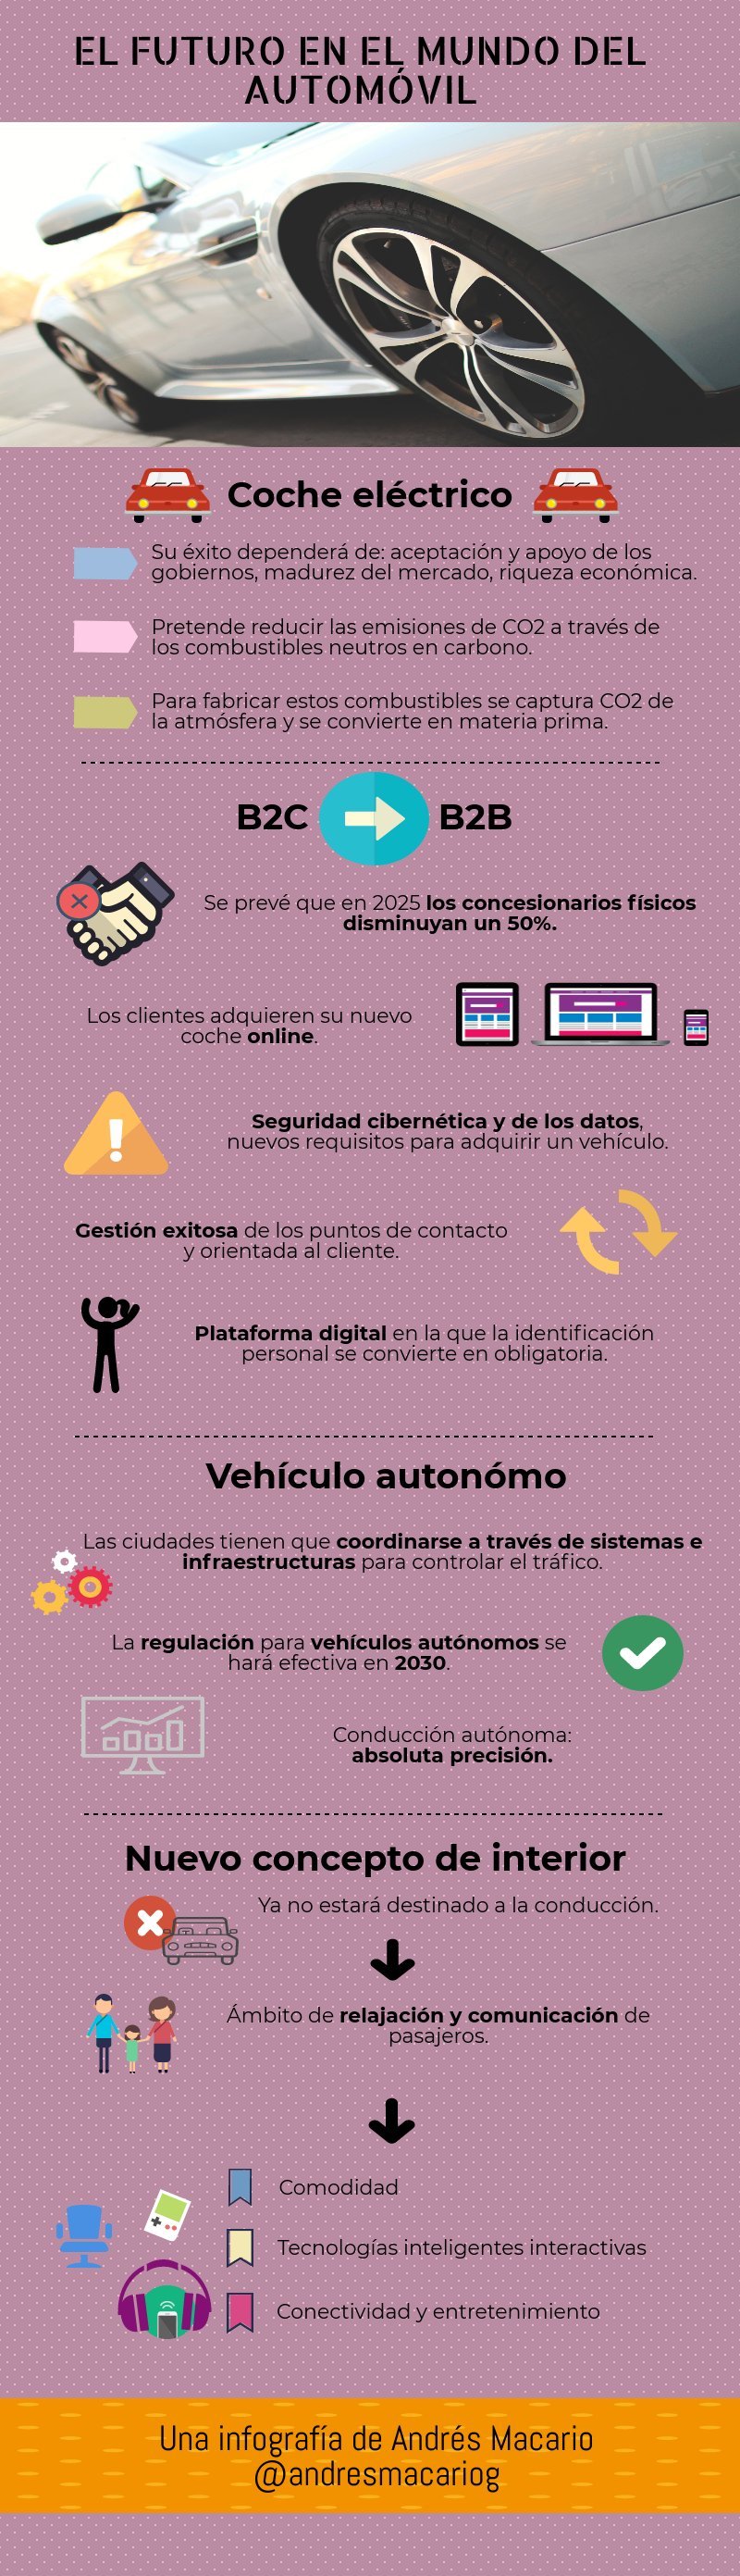 El futuro del automóvil - infografía Andrés Macario